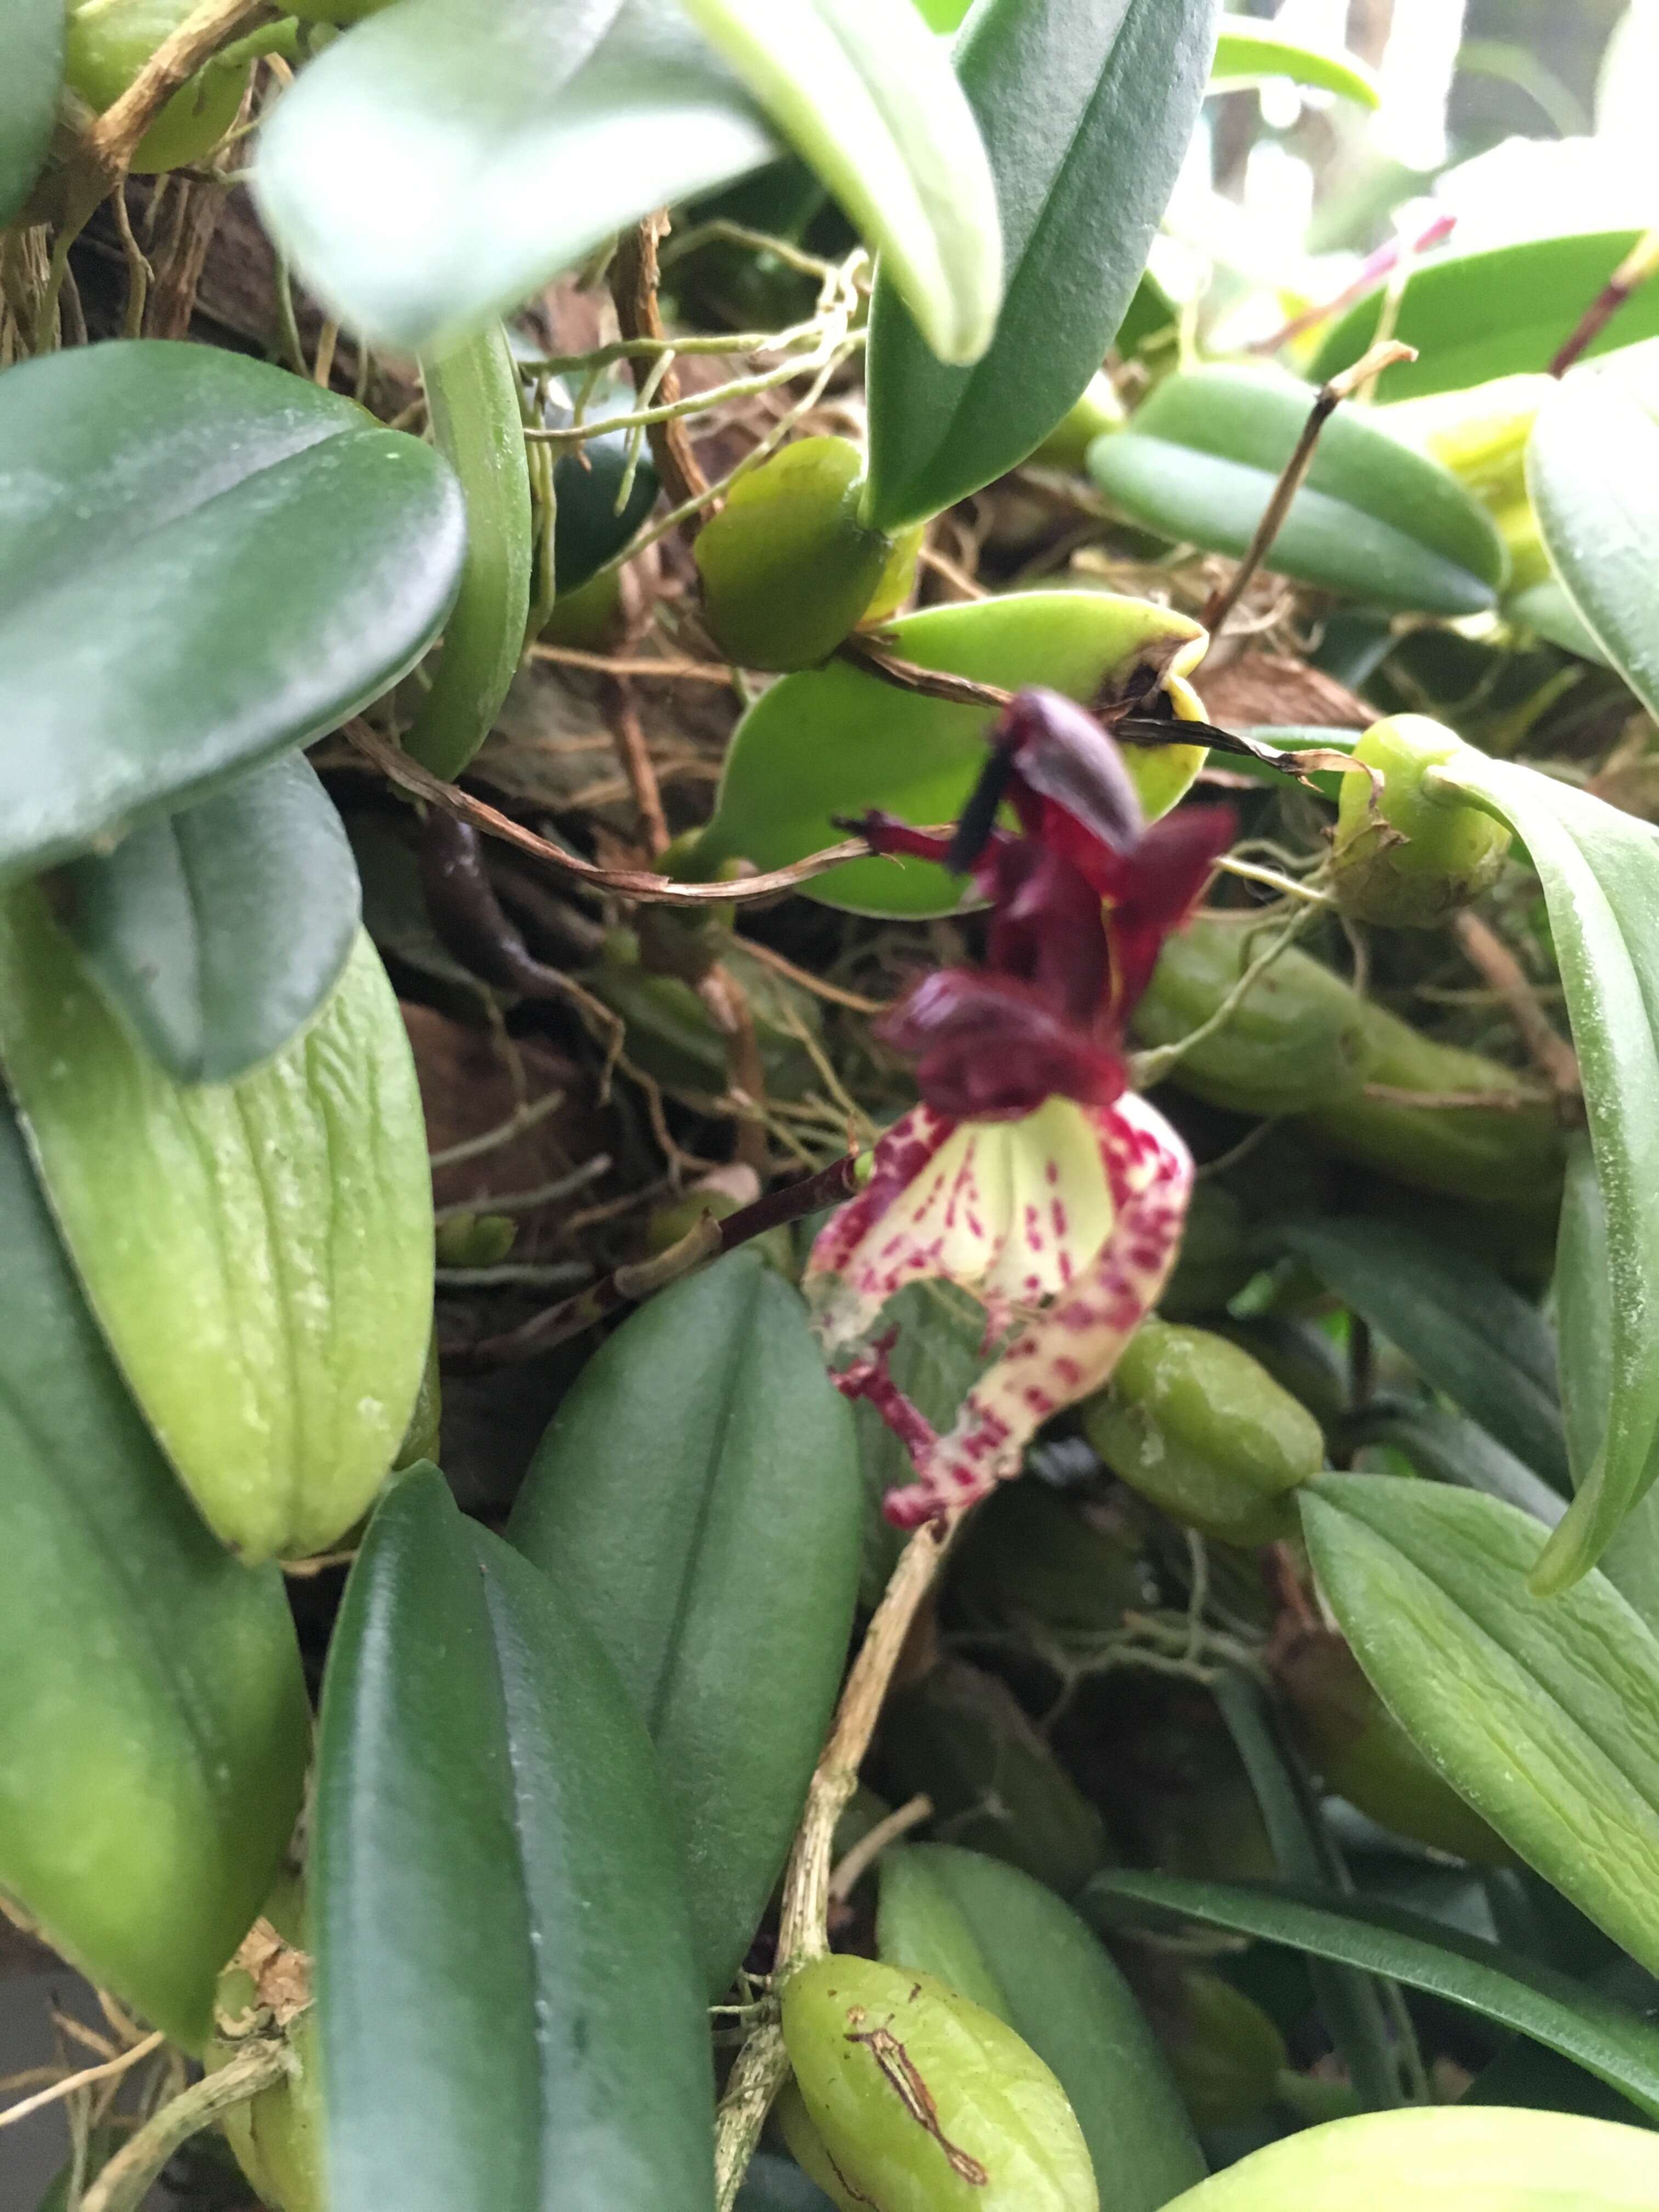 Image of Bulbophyllum Thouars